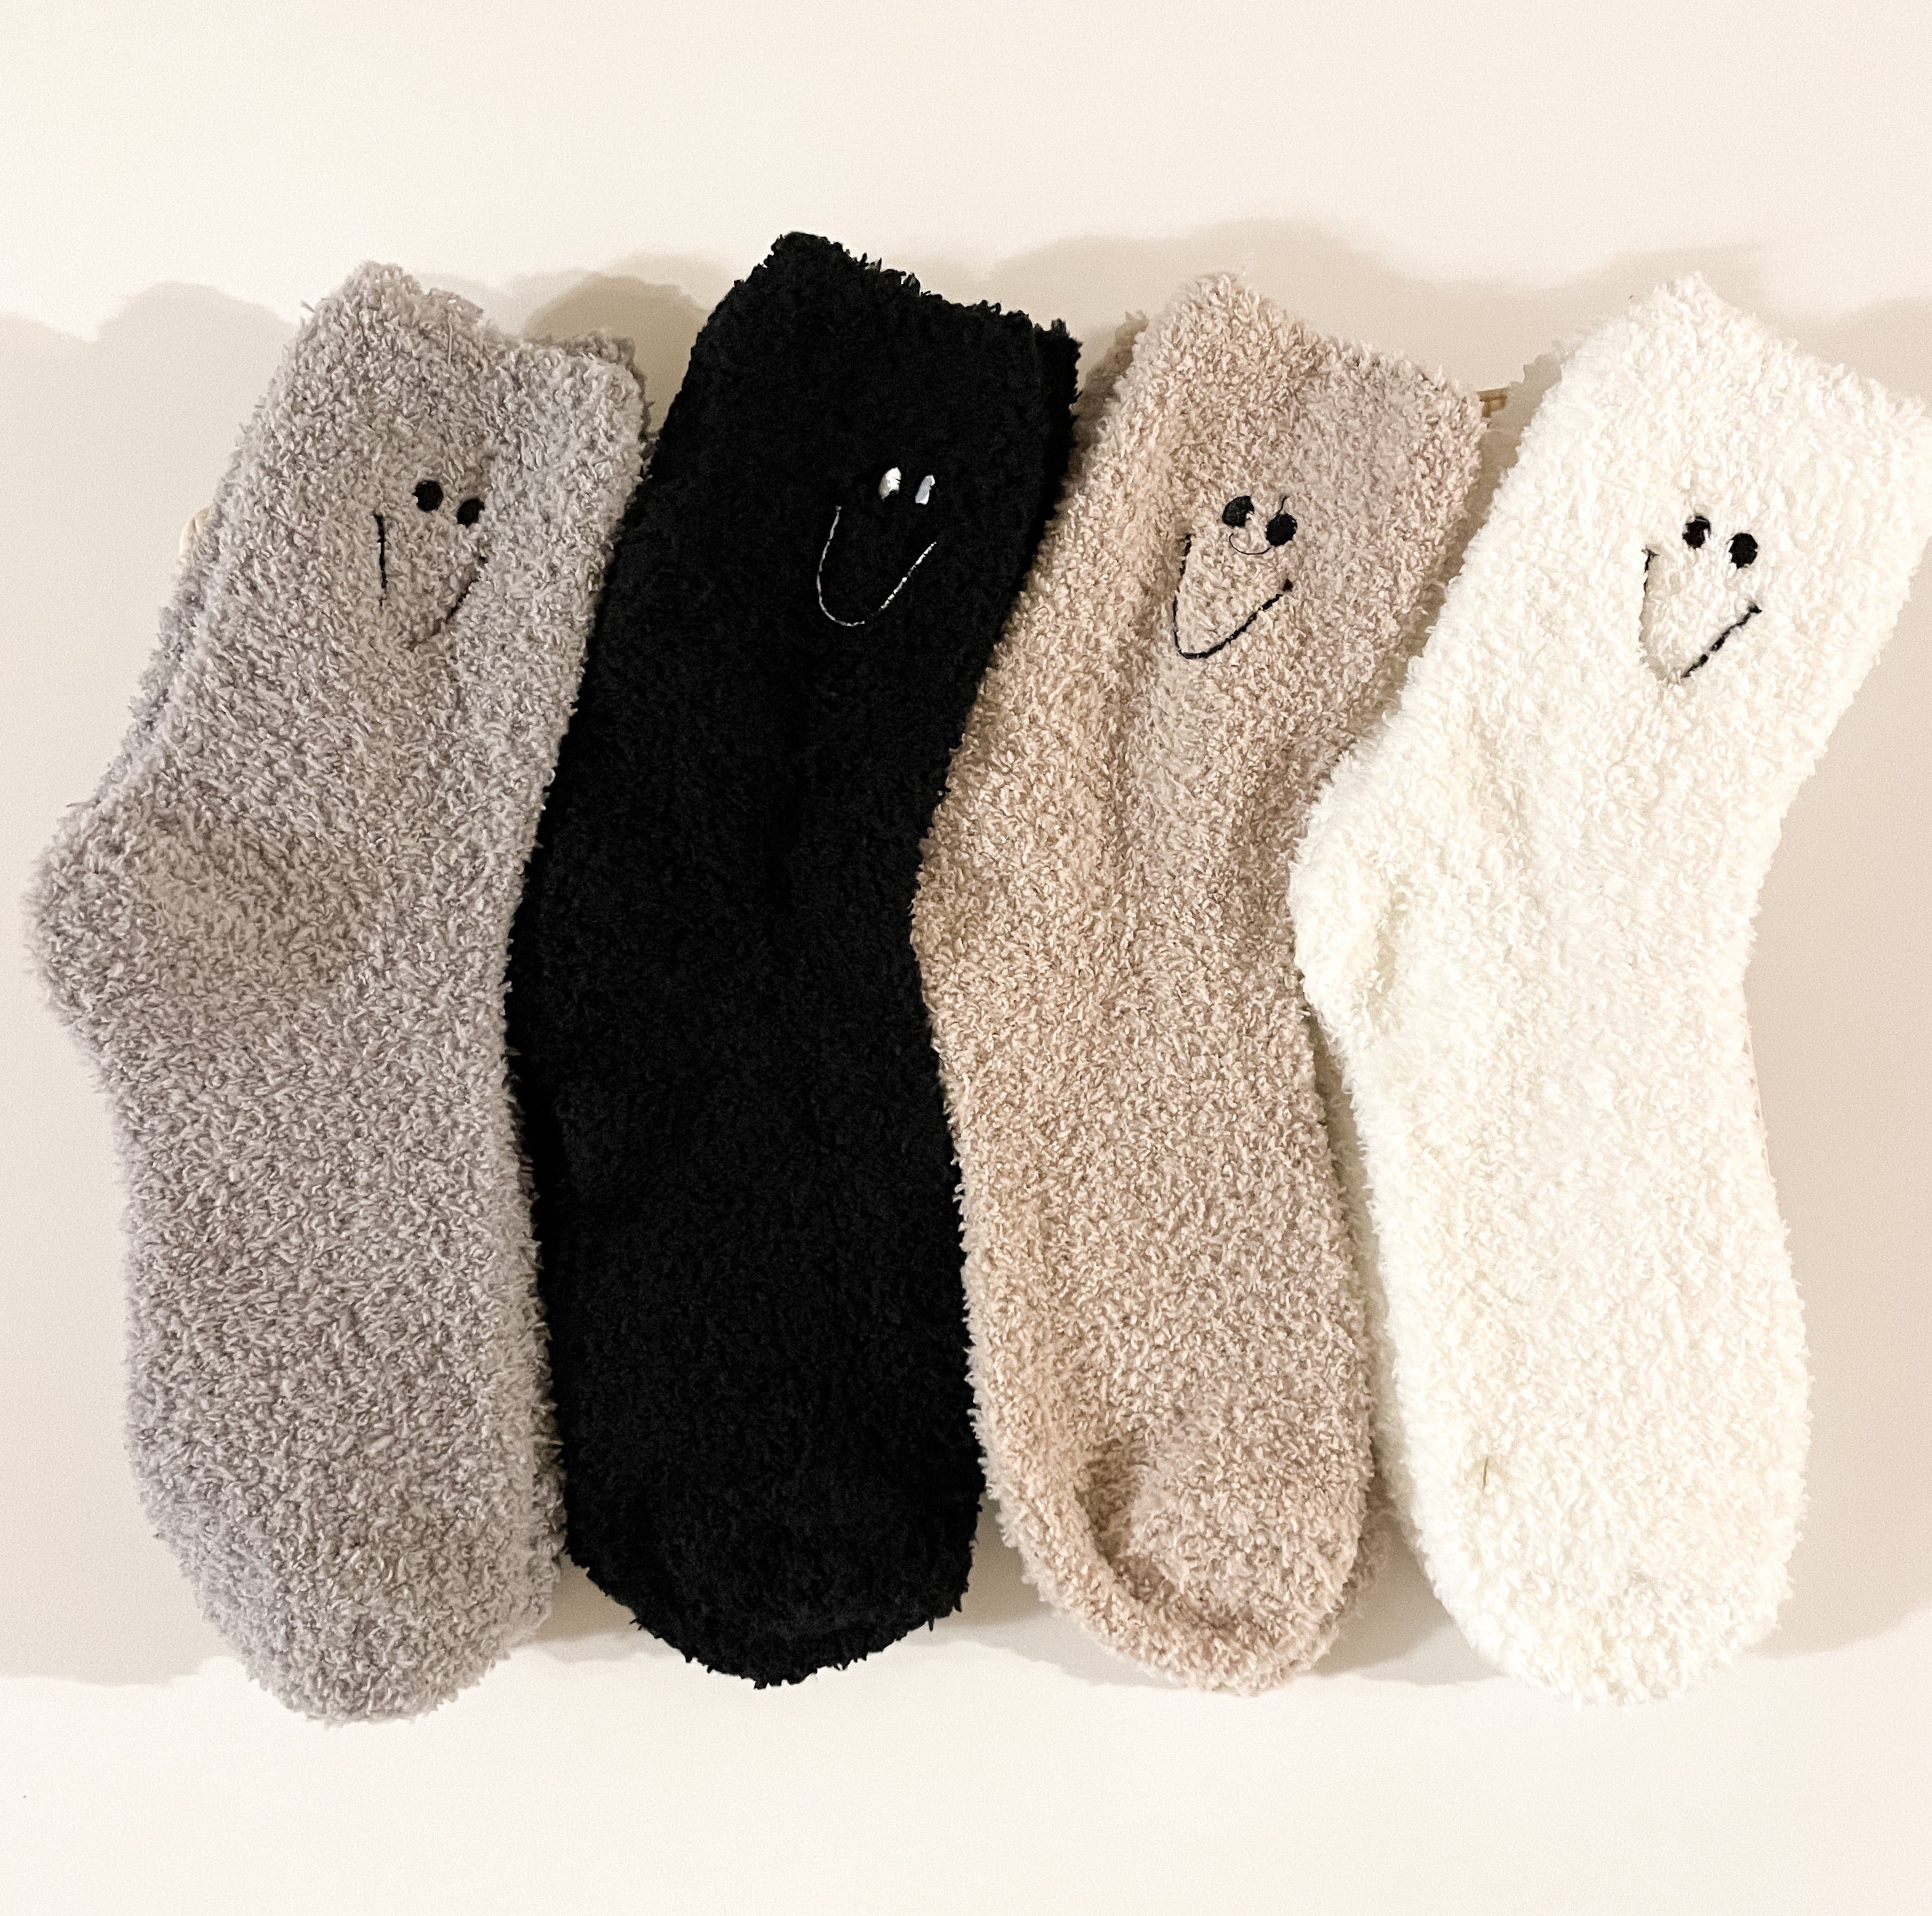 Smiley Fuzzy Socks